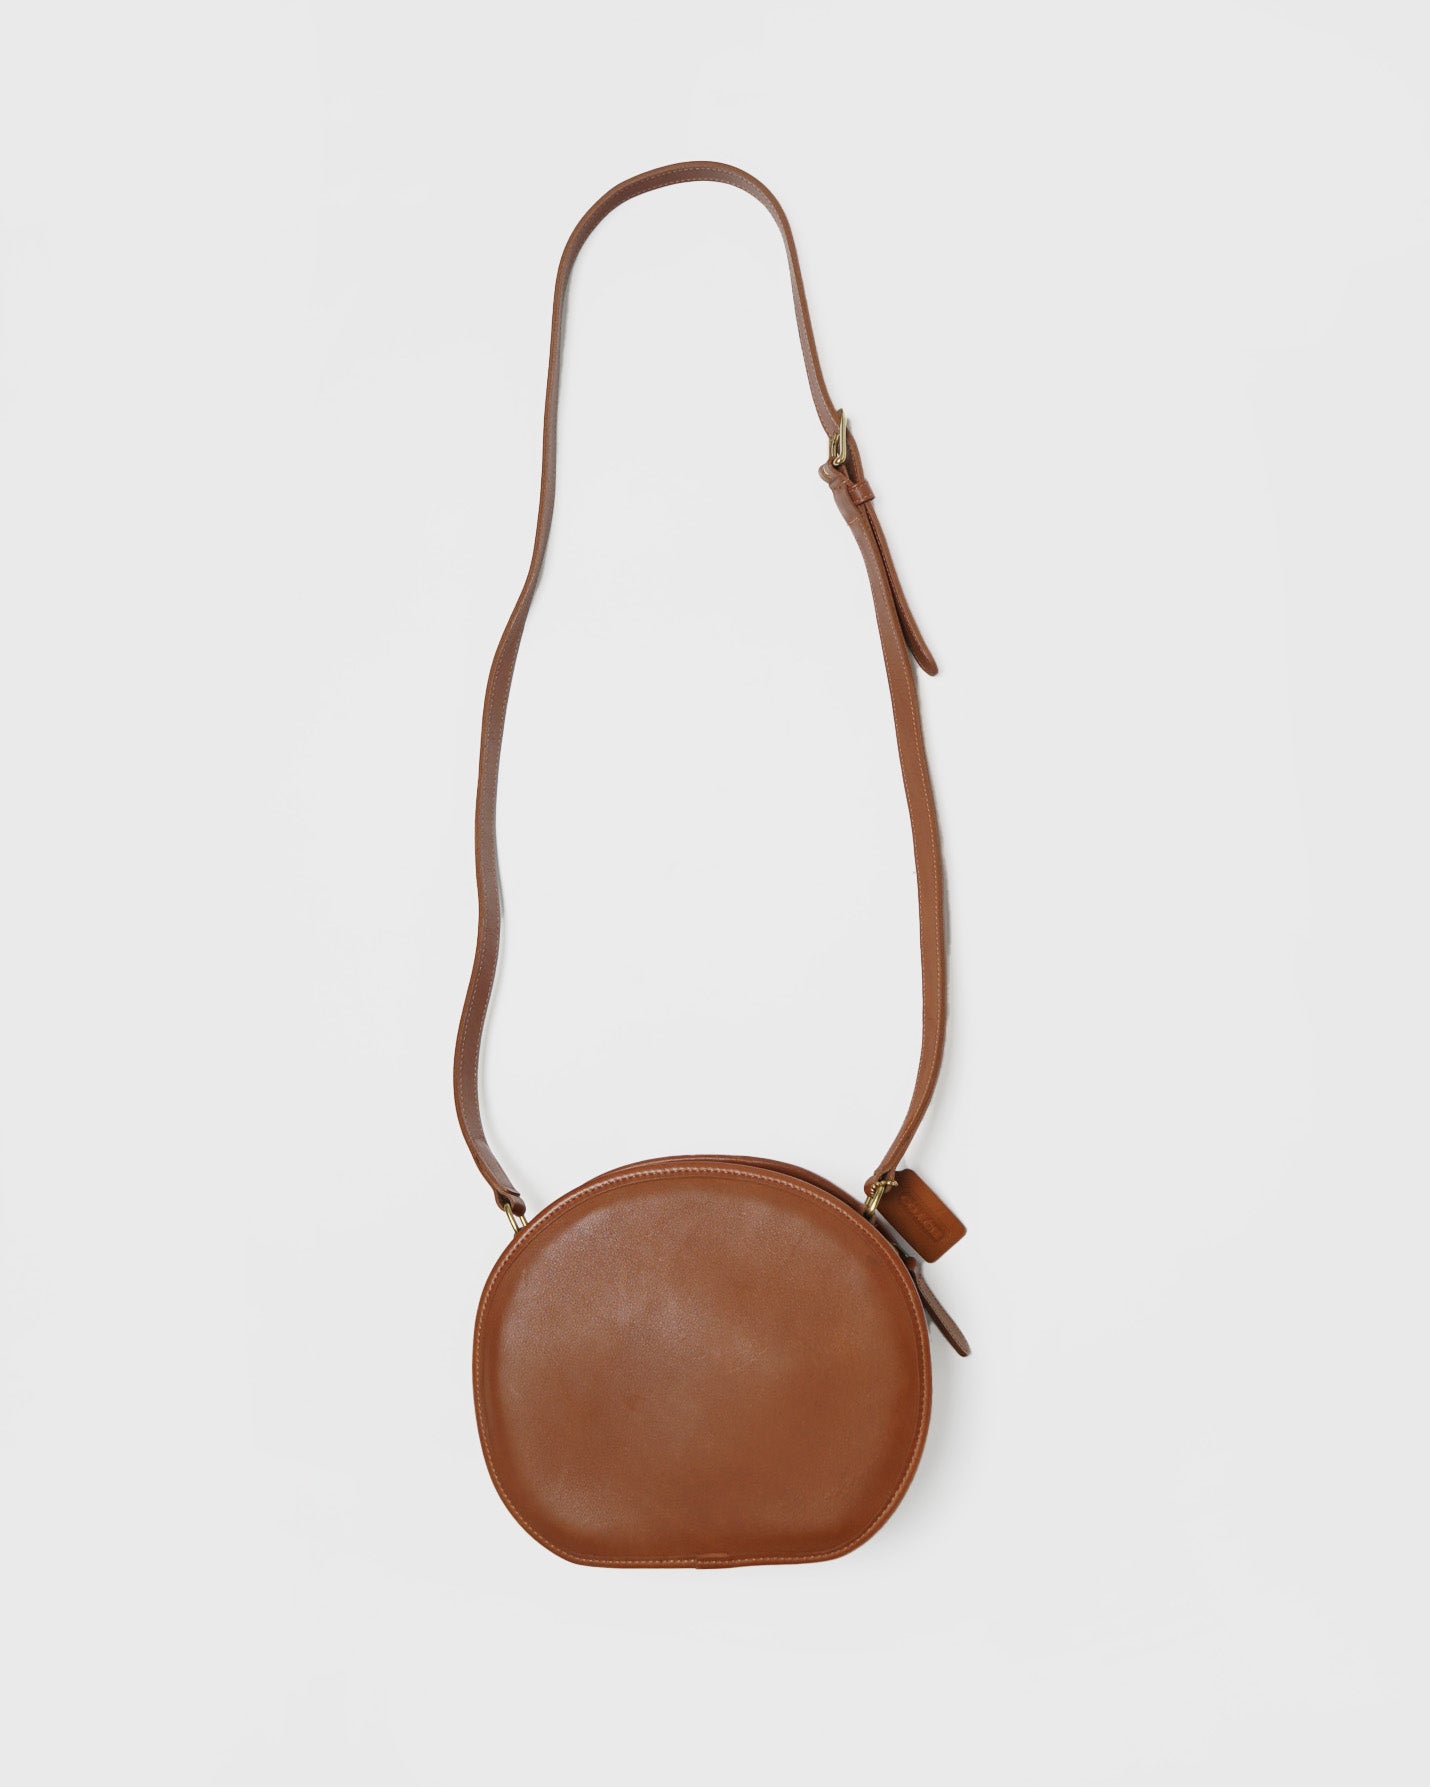 Leather Shoulder Bag / Tan